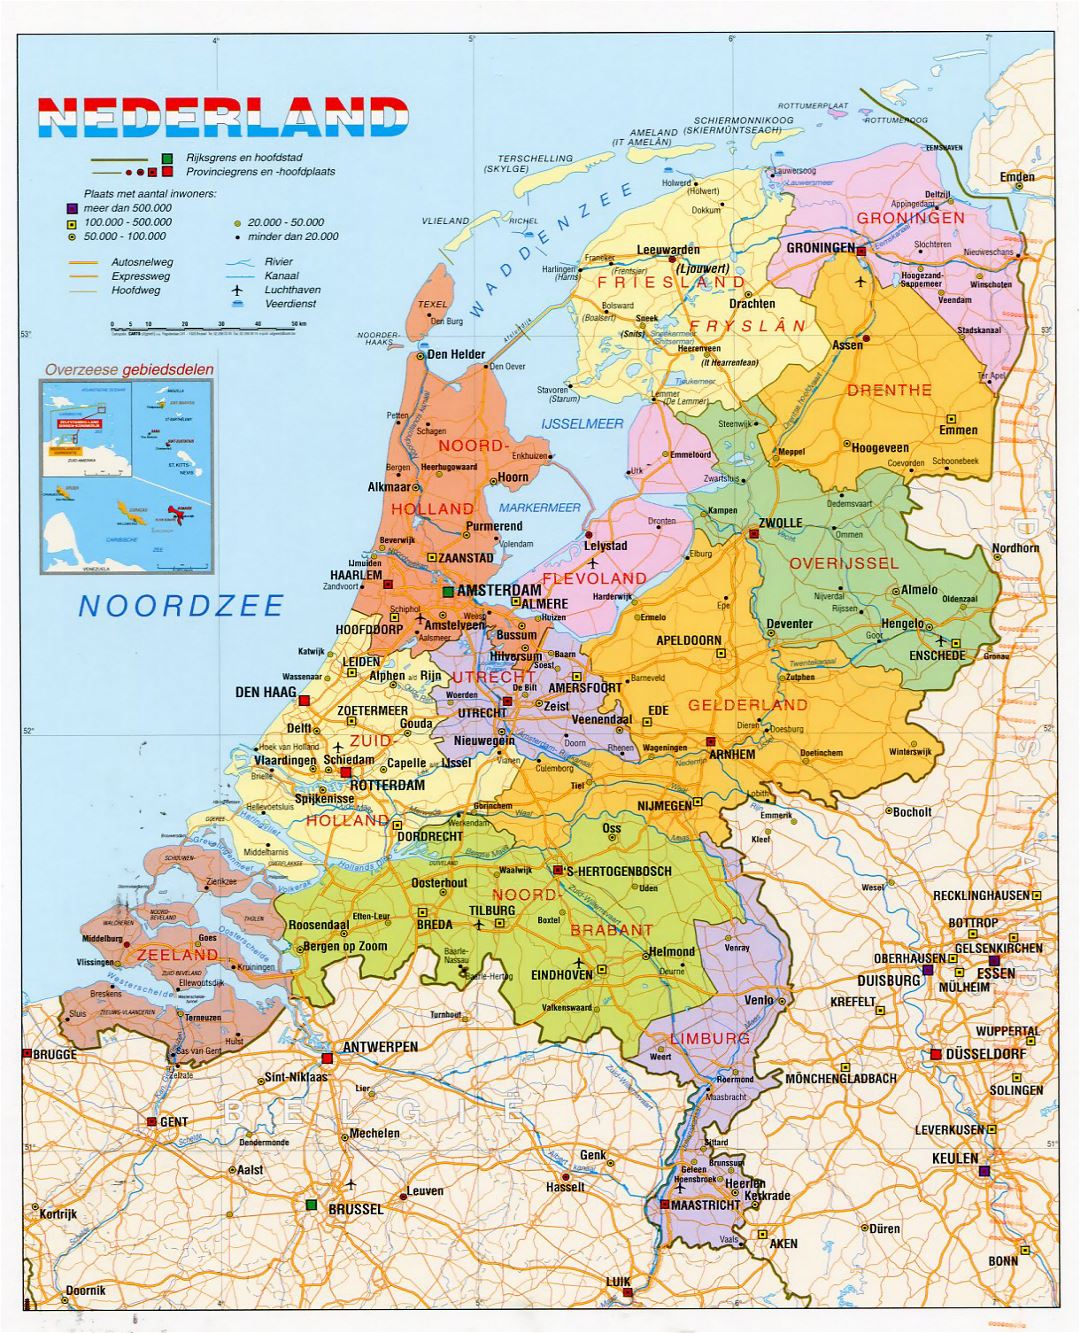 Detallado mapa político y administrativo de los Países Bajos con carreteras, ciudades y aeropuertos